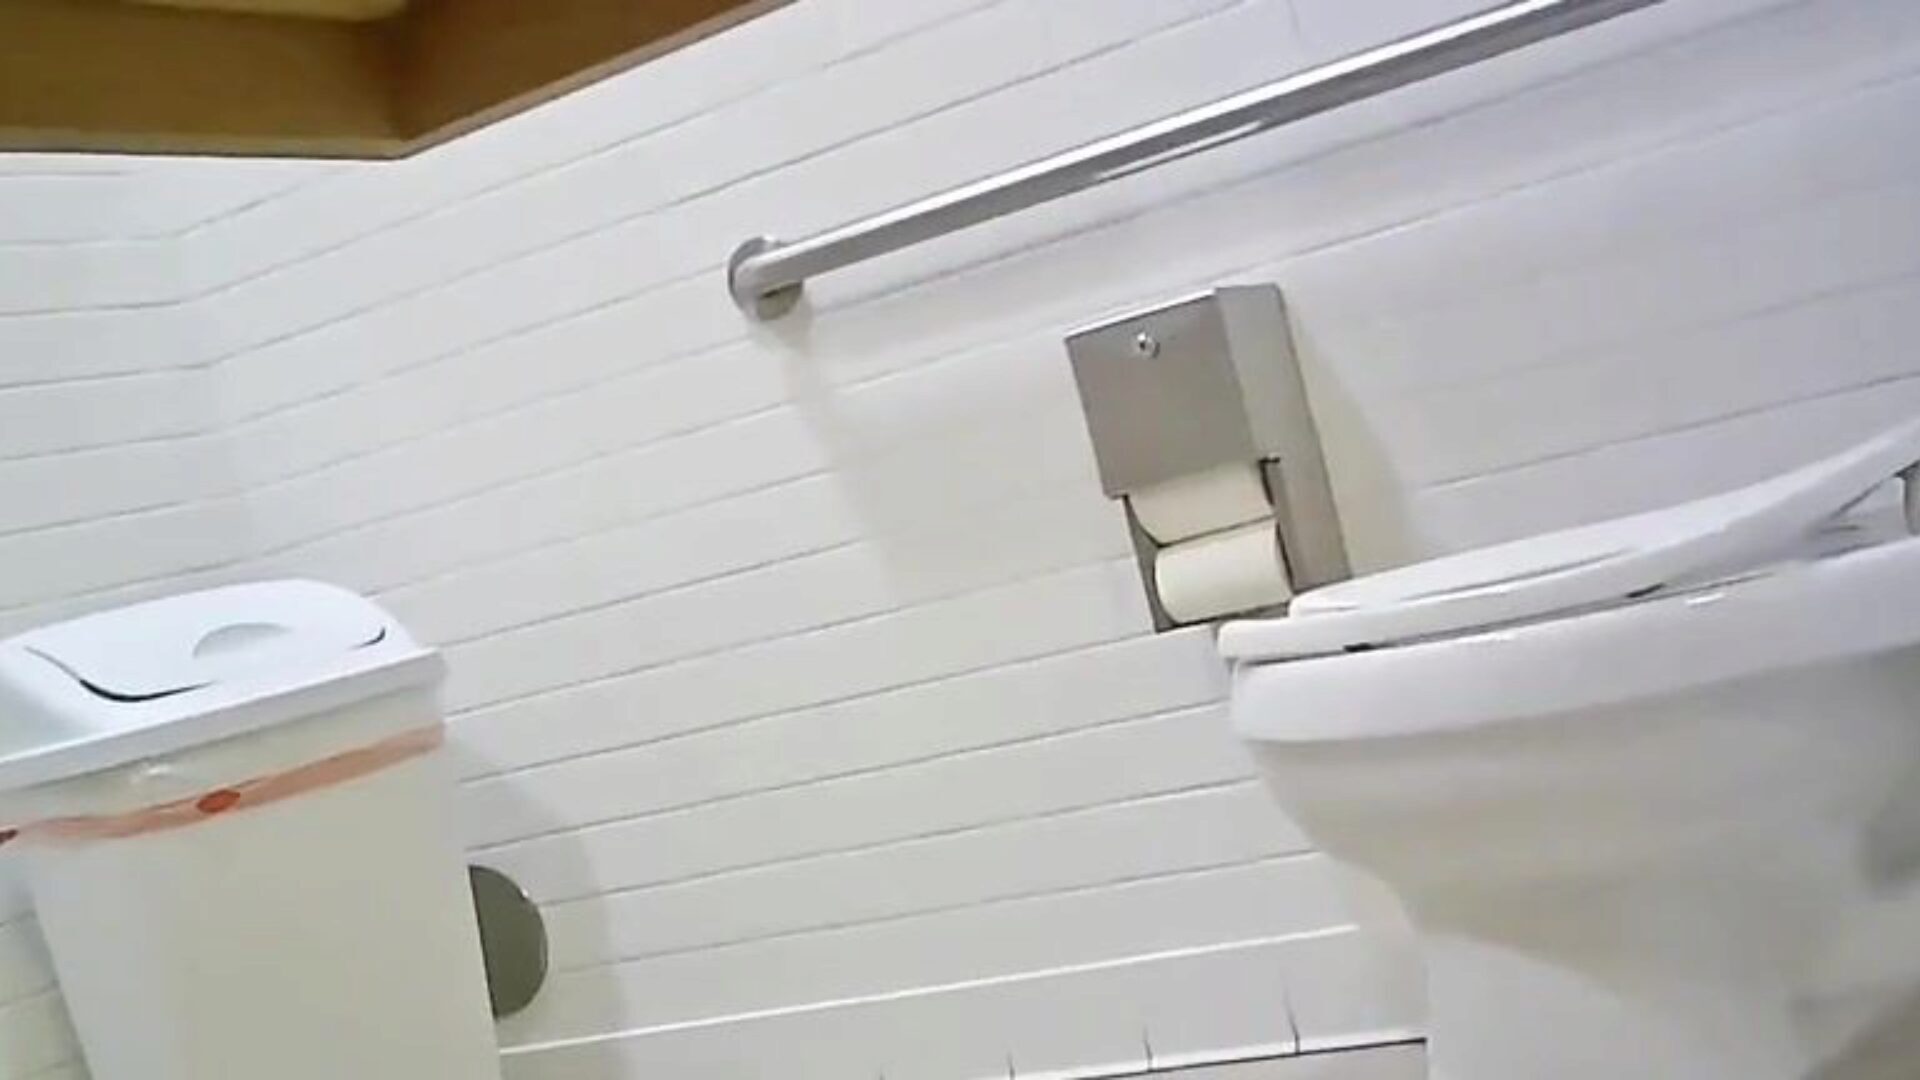 κρυφή κάμερα τουαλέτας - ταιριάζει hotty ιδανικό κιόσκι ελέγξτε αυτό, πείτε μου τη γνώμη σας; p ’